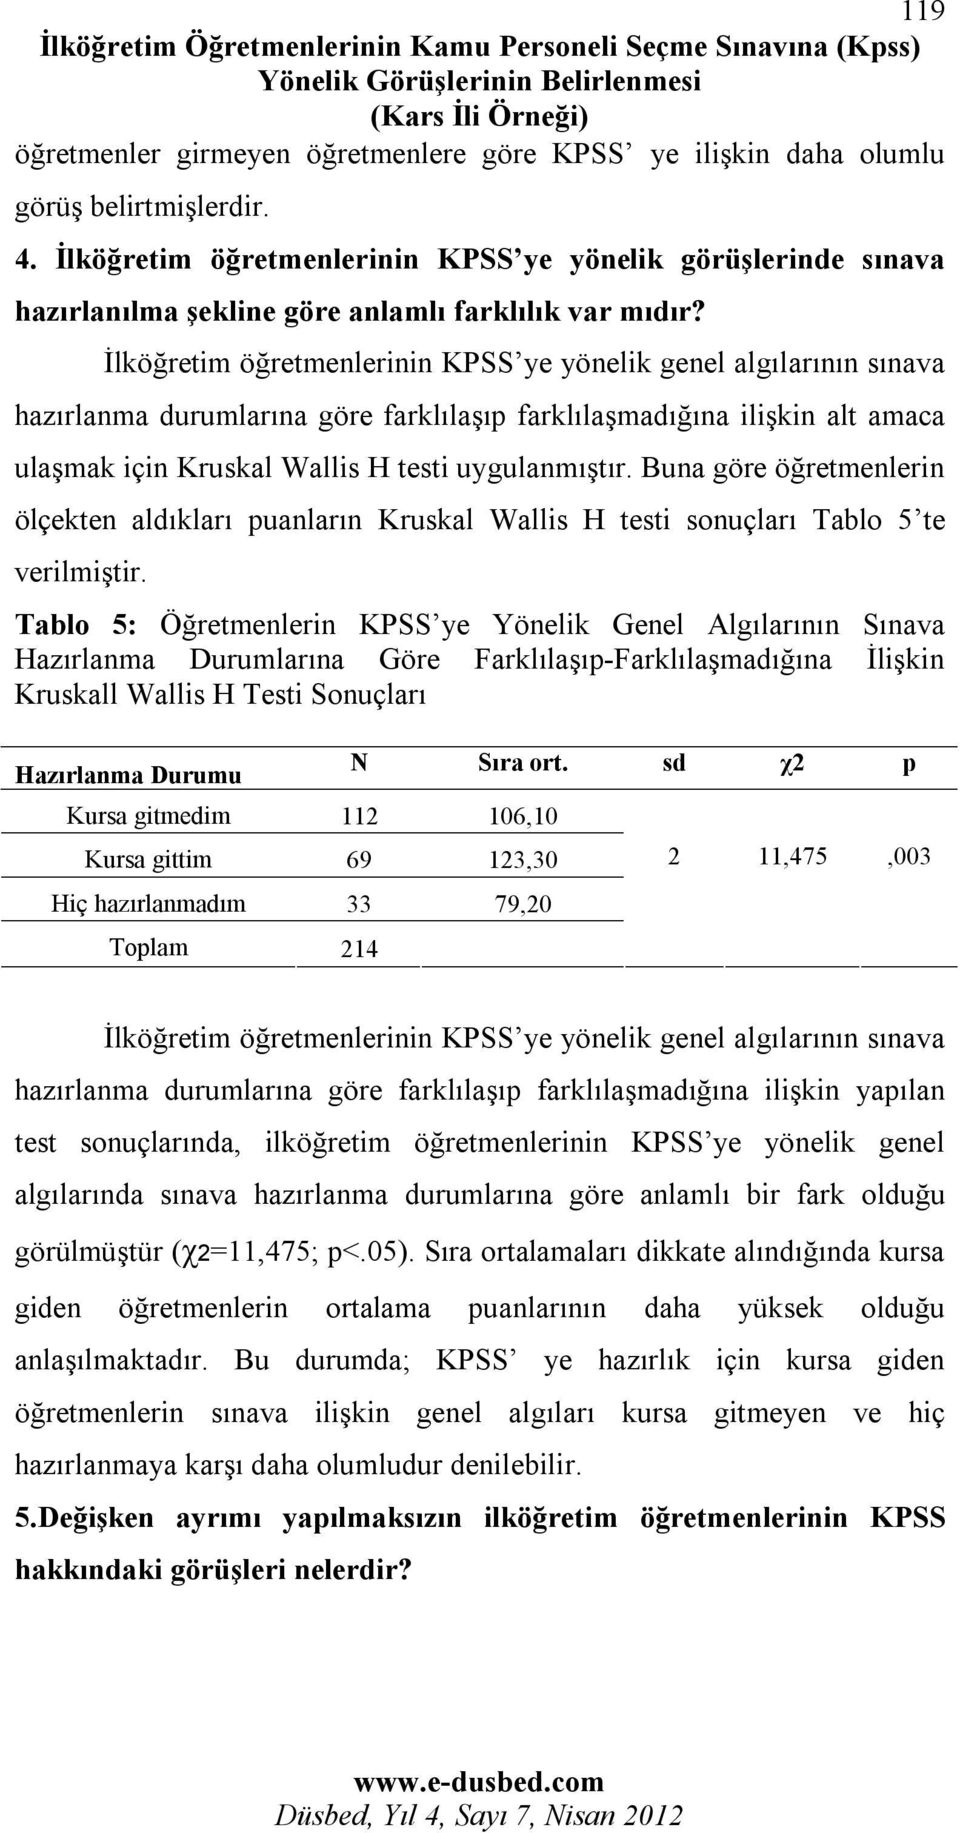 İlköğretim öğretmenlerinin KPSS ye yönelik genel algılarının sınava hazırlanma durumlarına göre farklılaşıp farklılaşmadığına ilişkin alt amaca ulaşmak için Kruskal Wallis H testi uygulanmıştır.